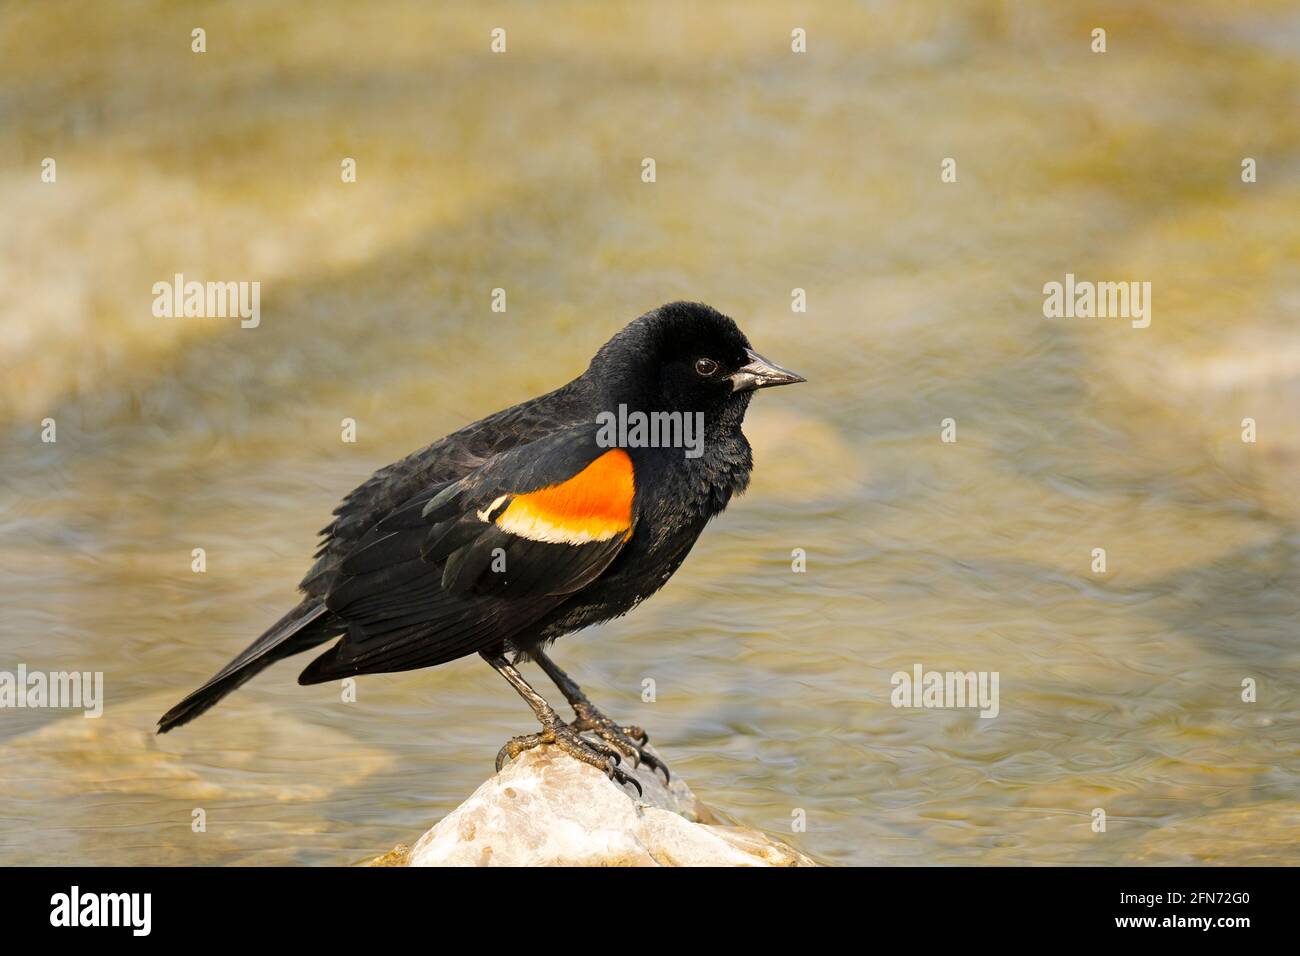 Oiseau-noir à aigree rouge, (Agelaius phoeniceus), mâle, oiseau, perché sur un rocher dans un ruisseau Banque D'Images